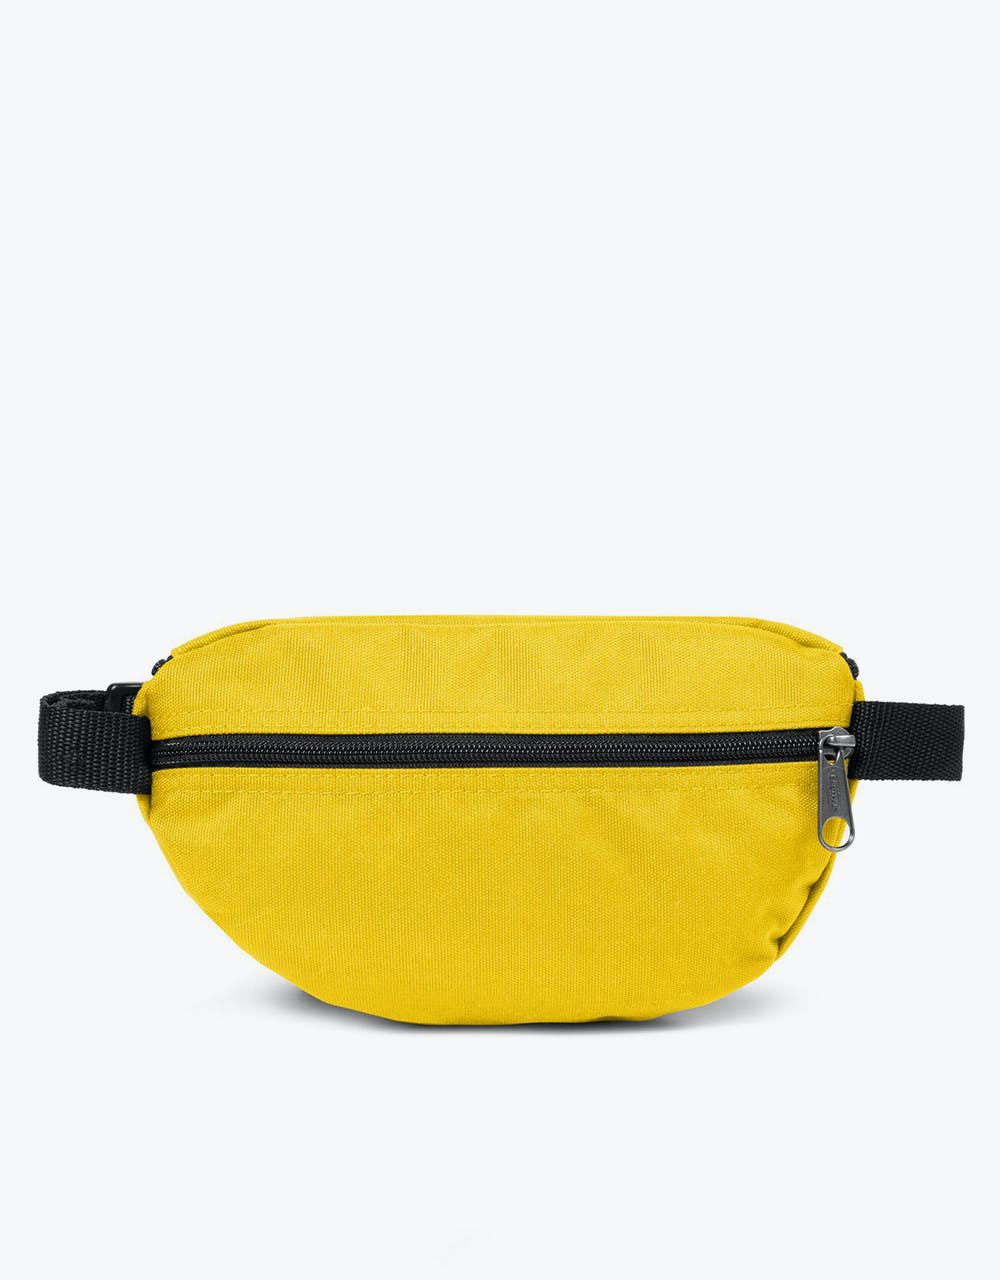 Eastpak Springer Cross Body Bag - Rising Yellow